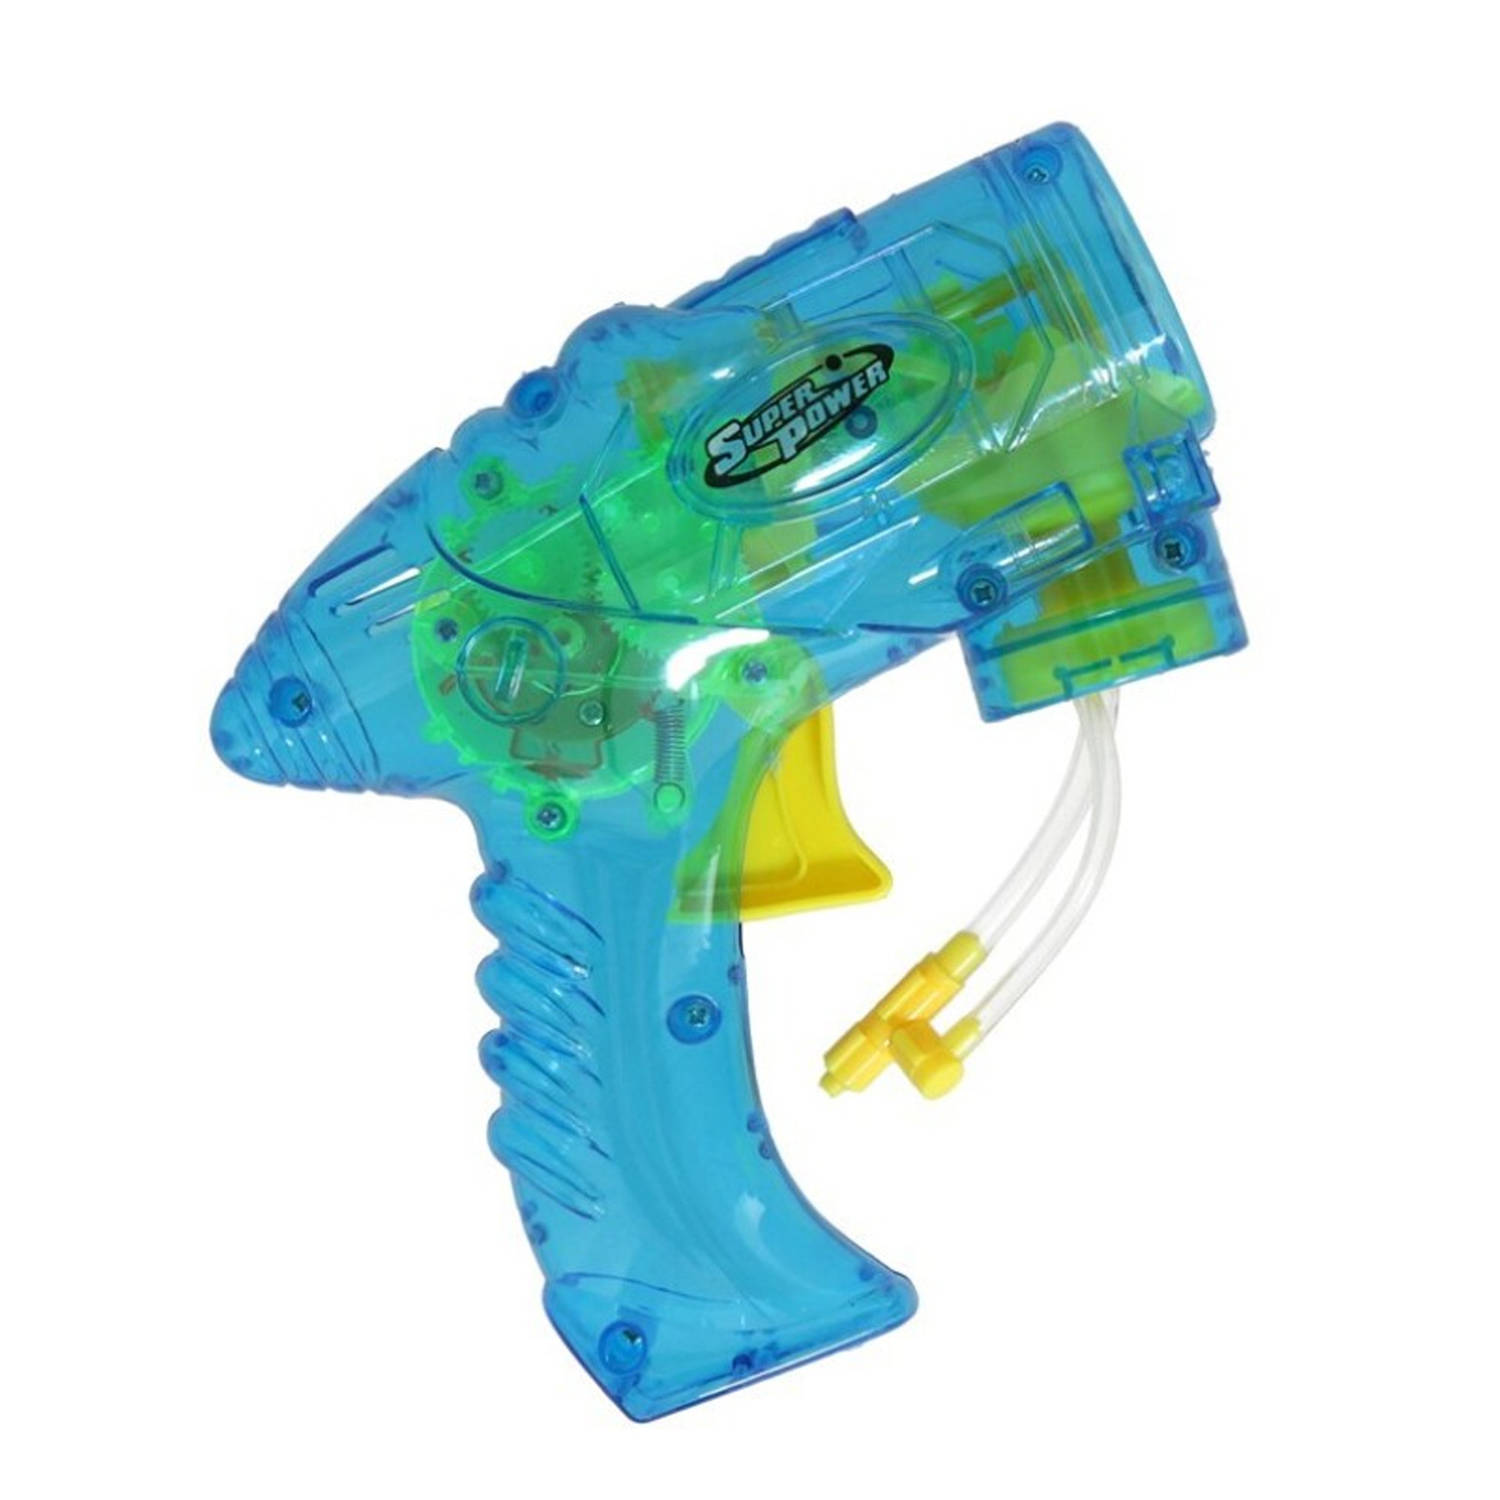 Bellenblaas speelgoed pistool met vullingen blauw 15 cm plastic bellen blazen Bellenblaas